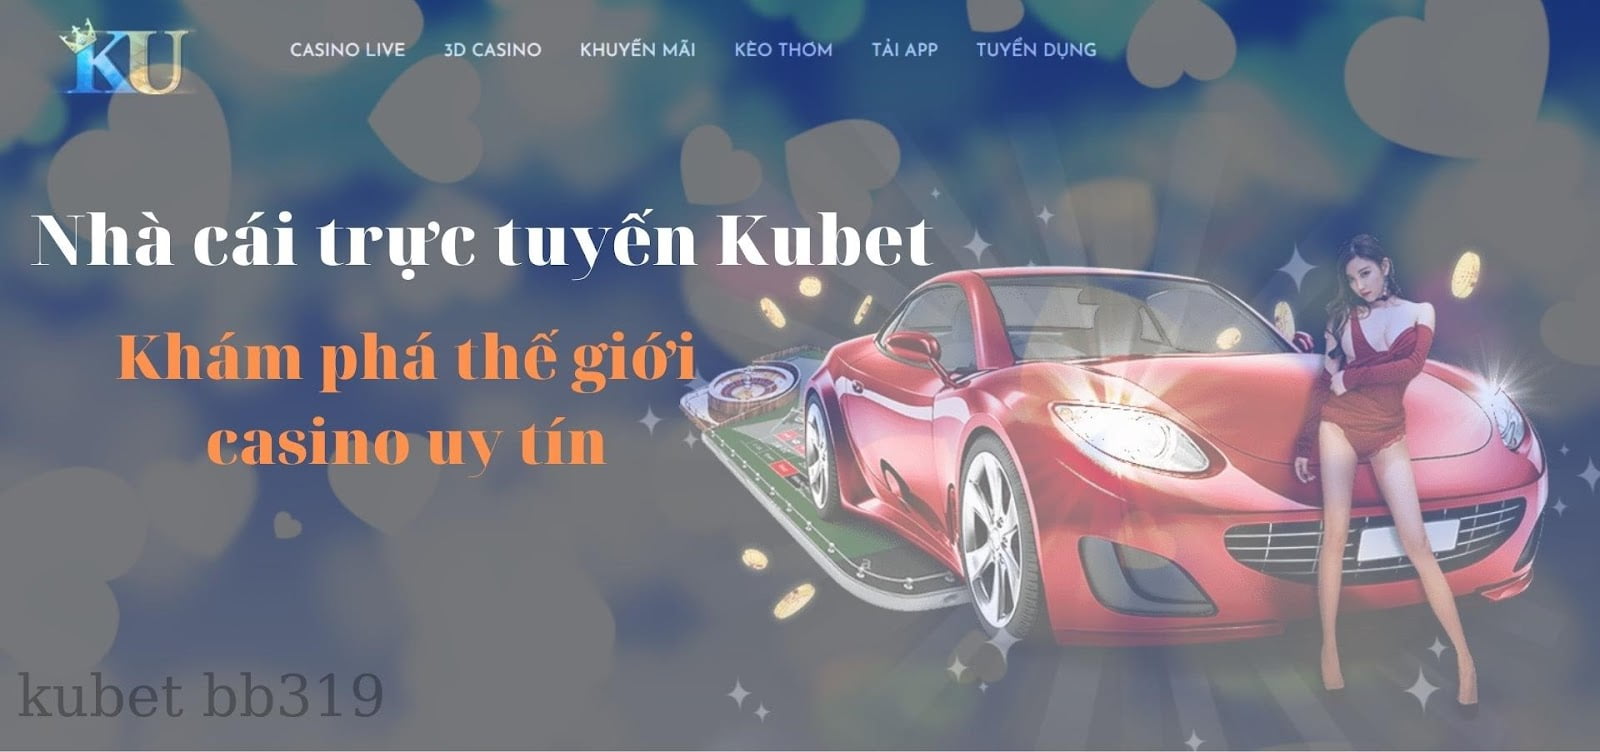 Nhà cái trực tuyến uy tín Kubet: Khám phá thế giới casino trực tuyến